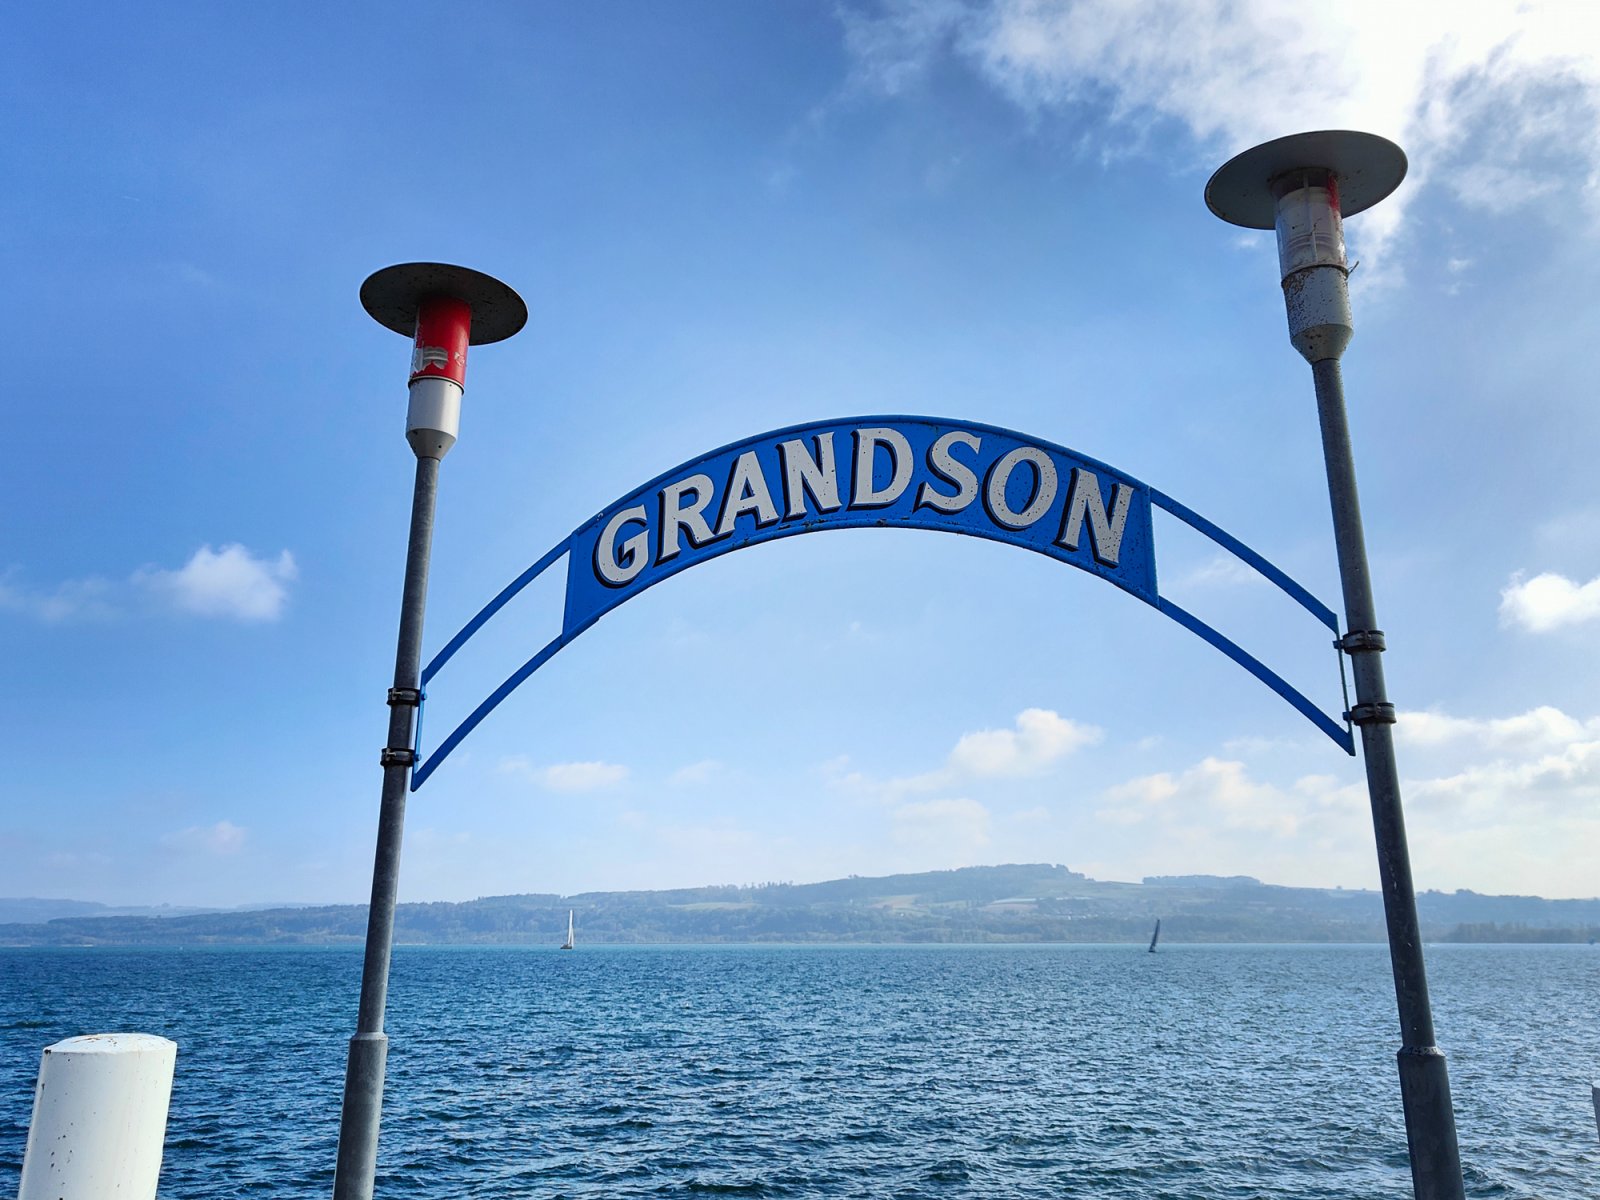 Grandson Vaud Harbor Sign